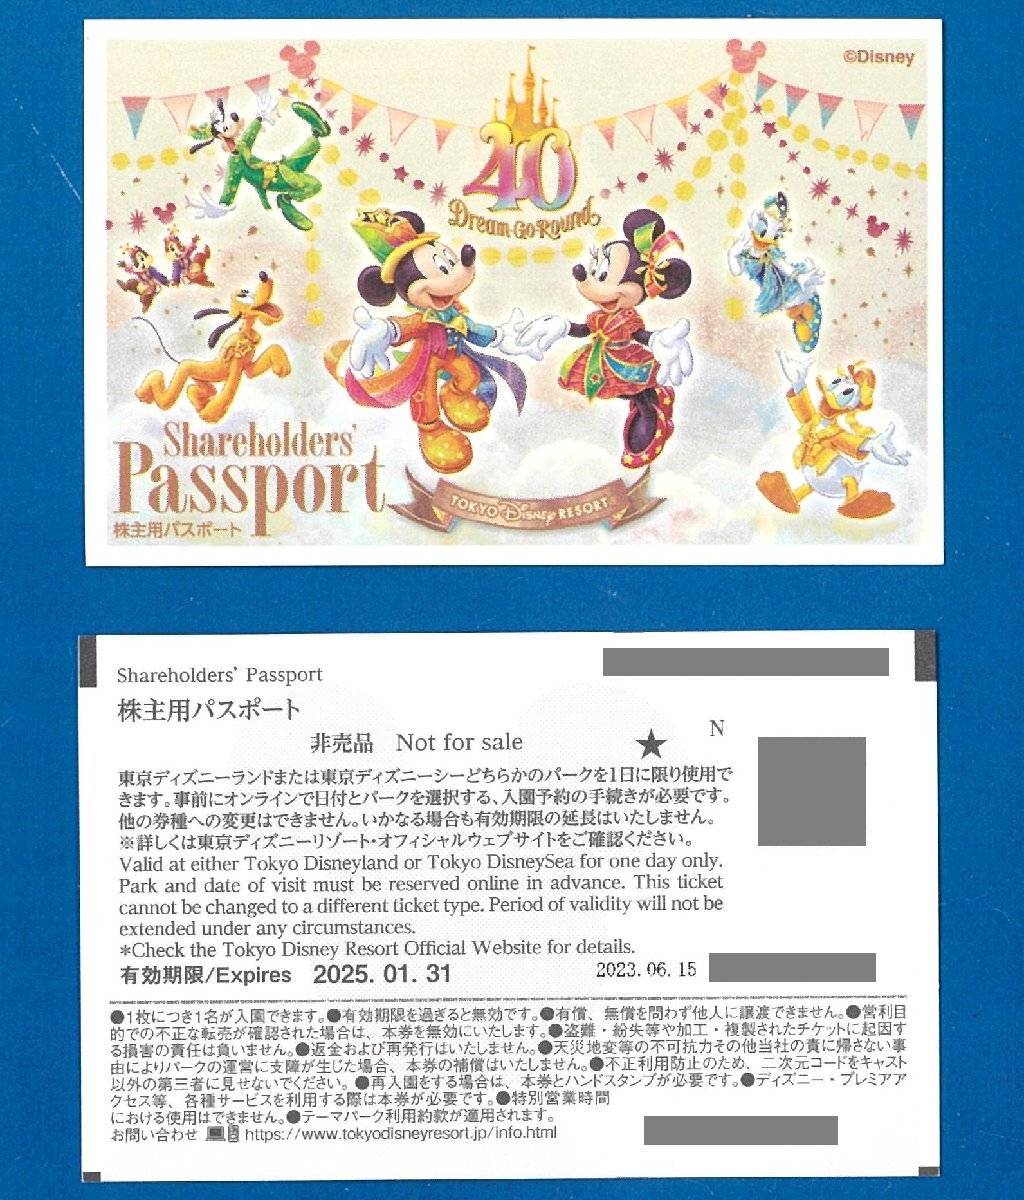 ☆M 即決あり： 東京ディズニーランド/東京ディズニーシー パスポート 4枚セット 2025.1.31迄 普通郵便無料 オリエンタルランド株主優待_画像は１枚の表裏です